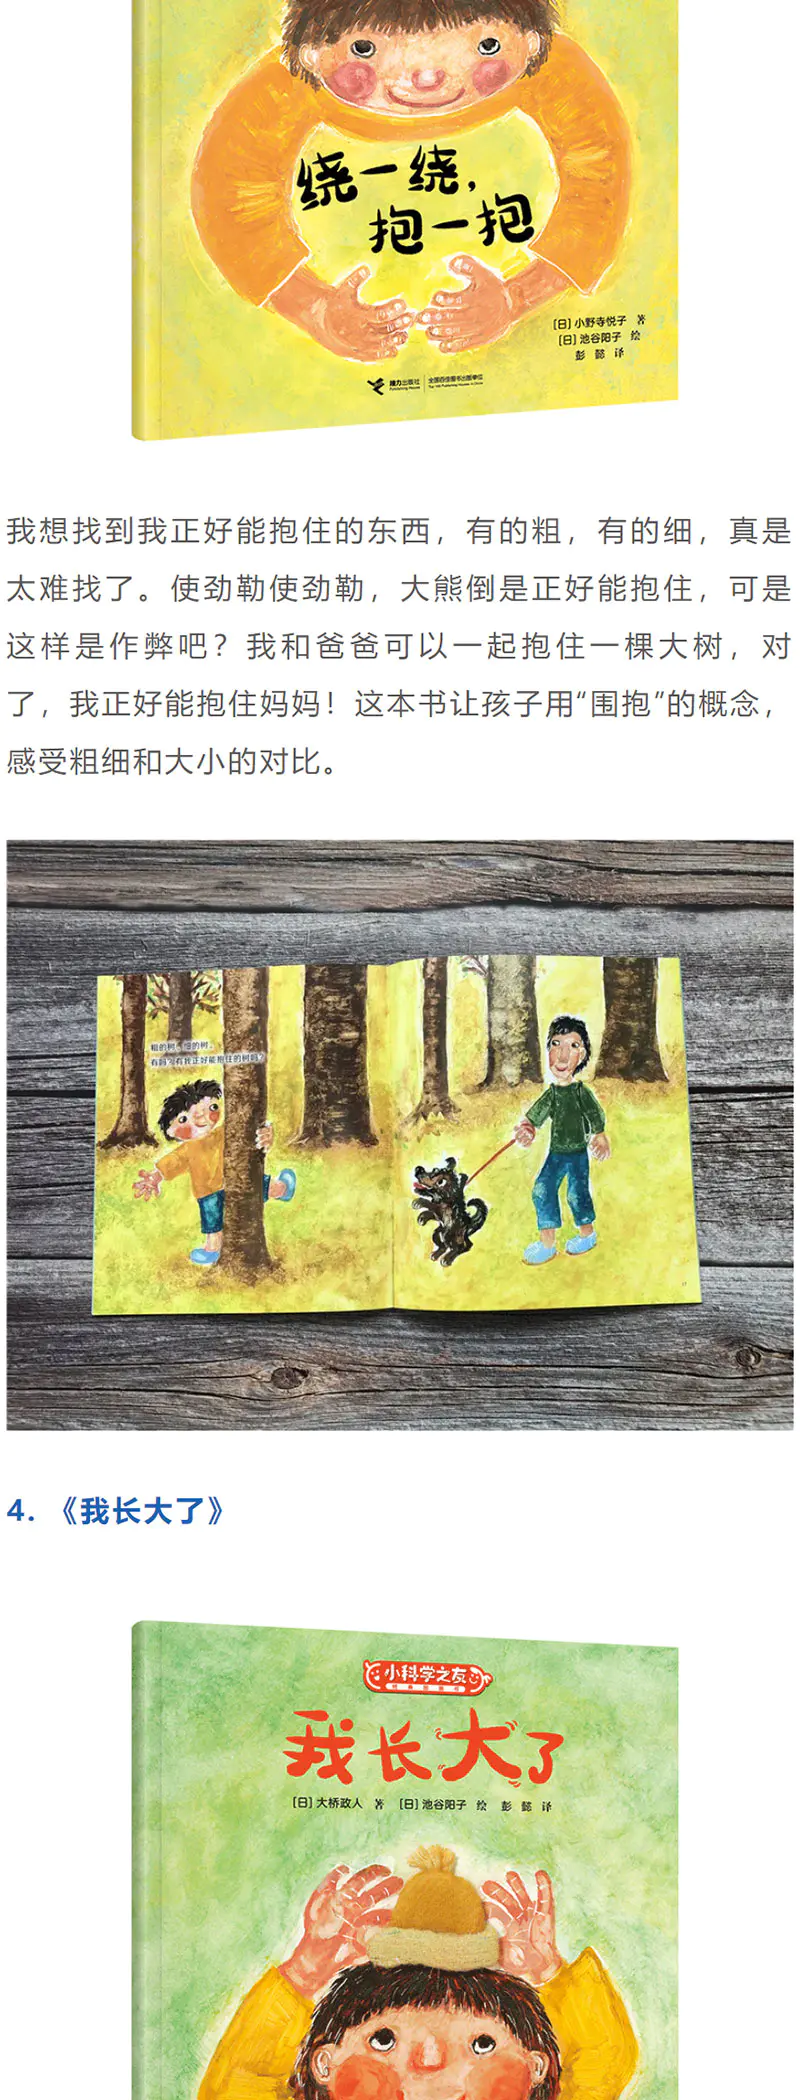 2 4岁 小科学之友 12册中文版畅销50年世界经典科普系列图书知识绘本